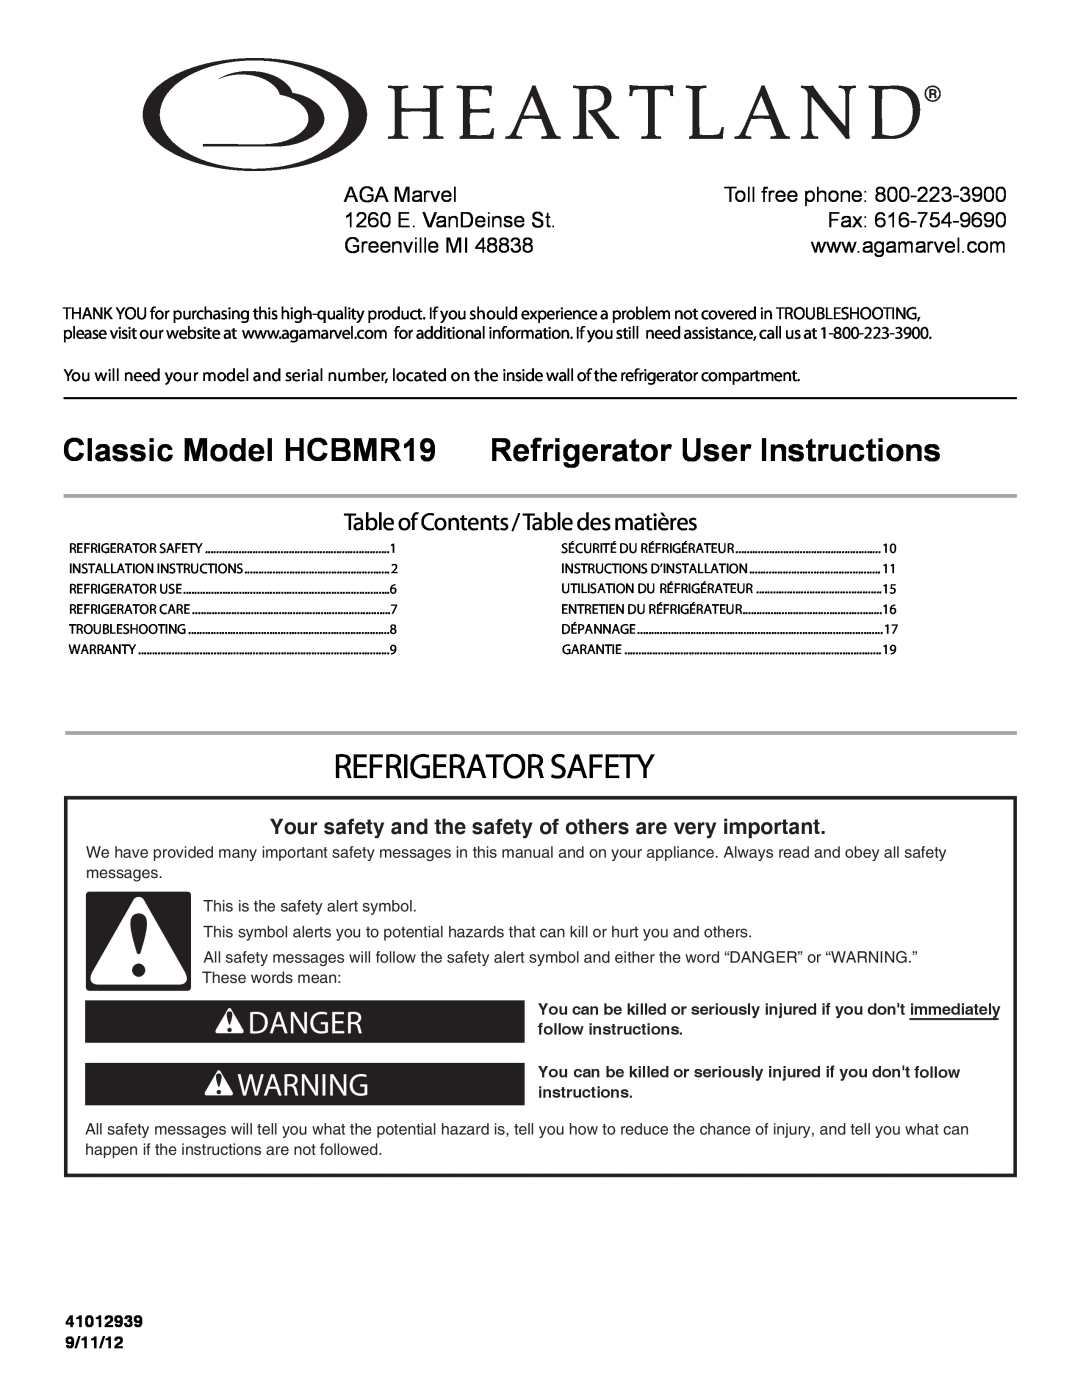 Heartland installation instructions Refrigerator Safety, Classic Model HCBMR19 Refrigerator User Instructions, Danger 